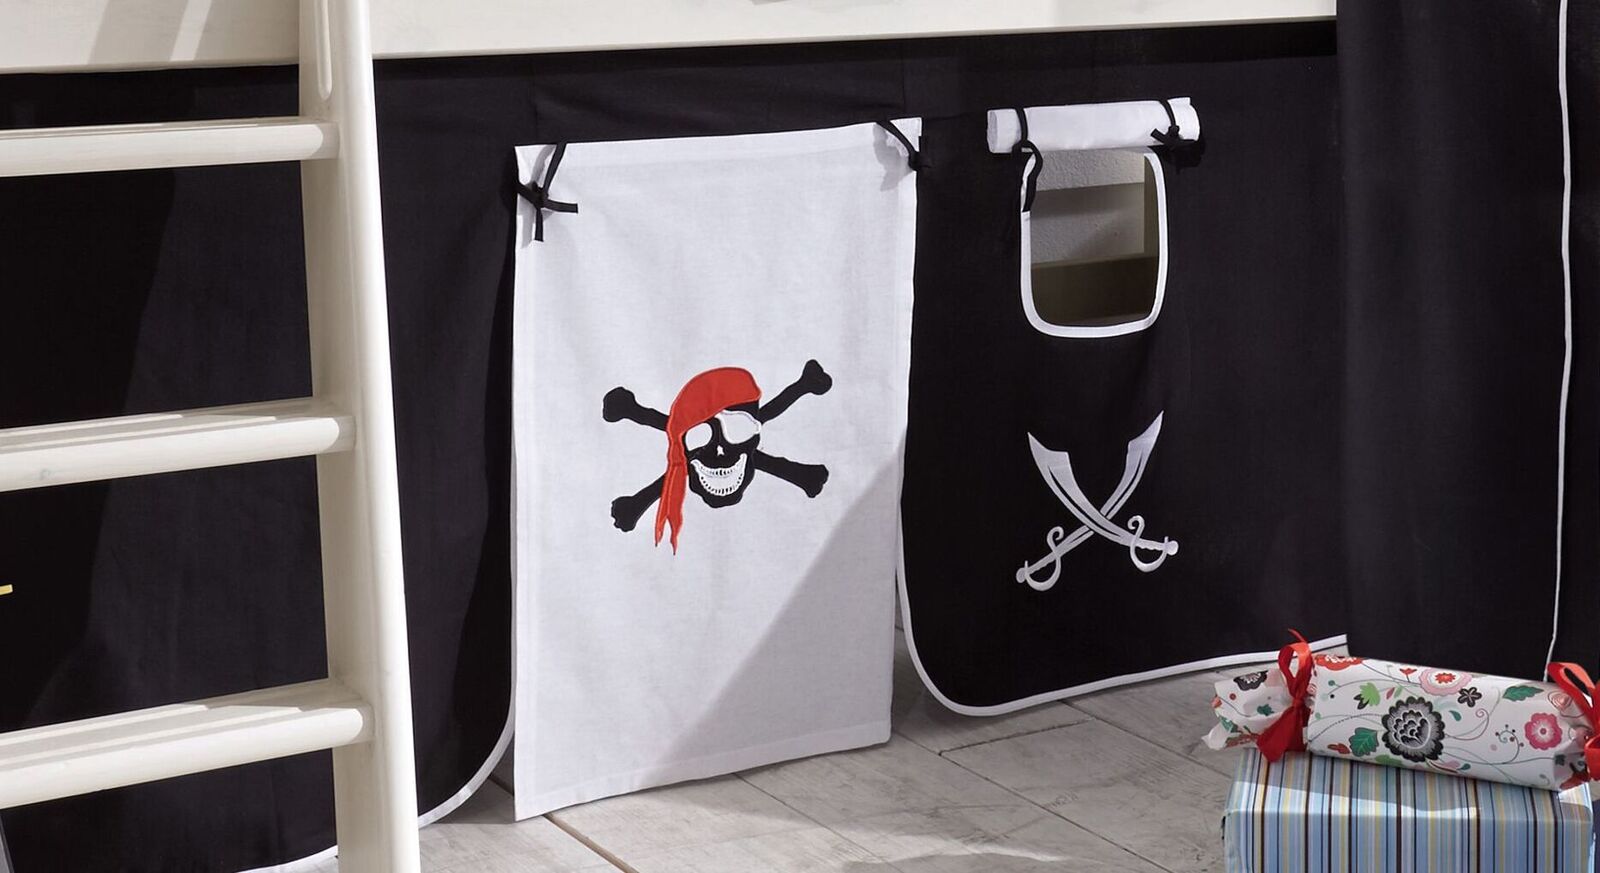 Mini-Hochbett Seeräuber mit Piratenmotiven auf dem Vorhang